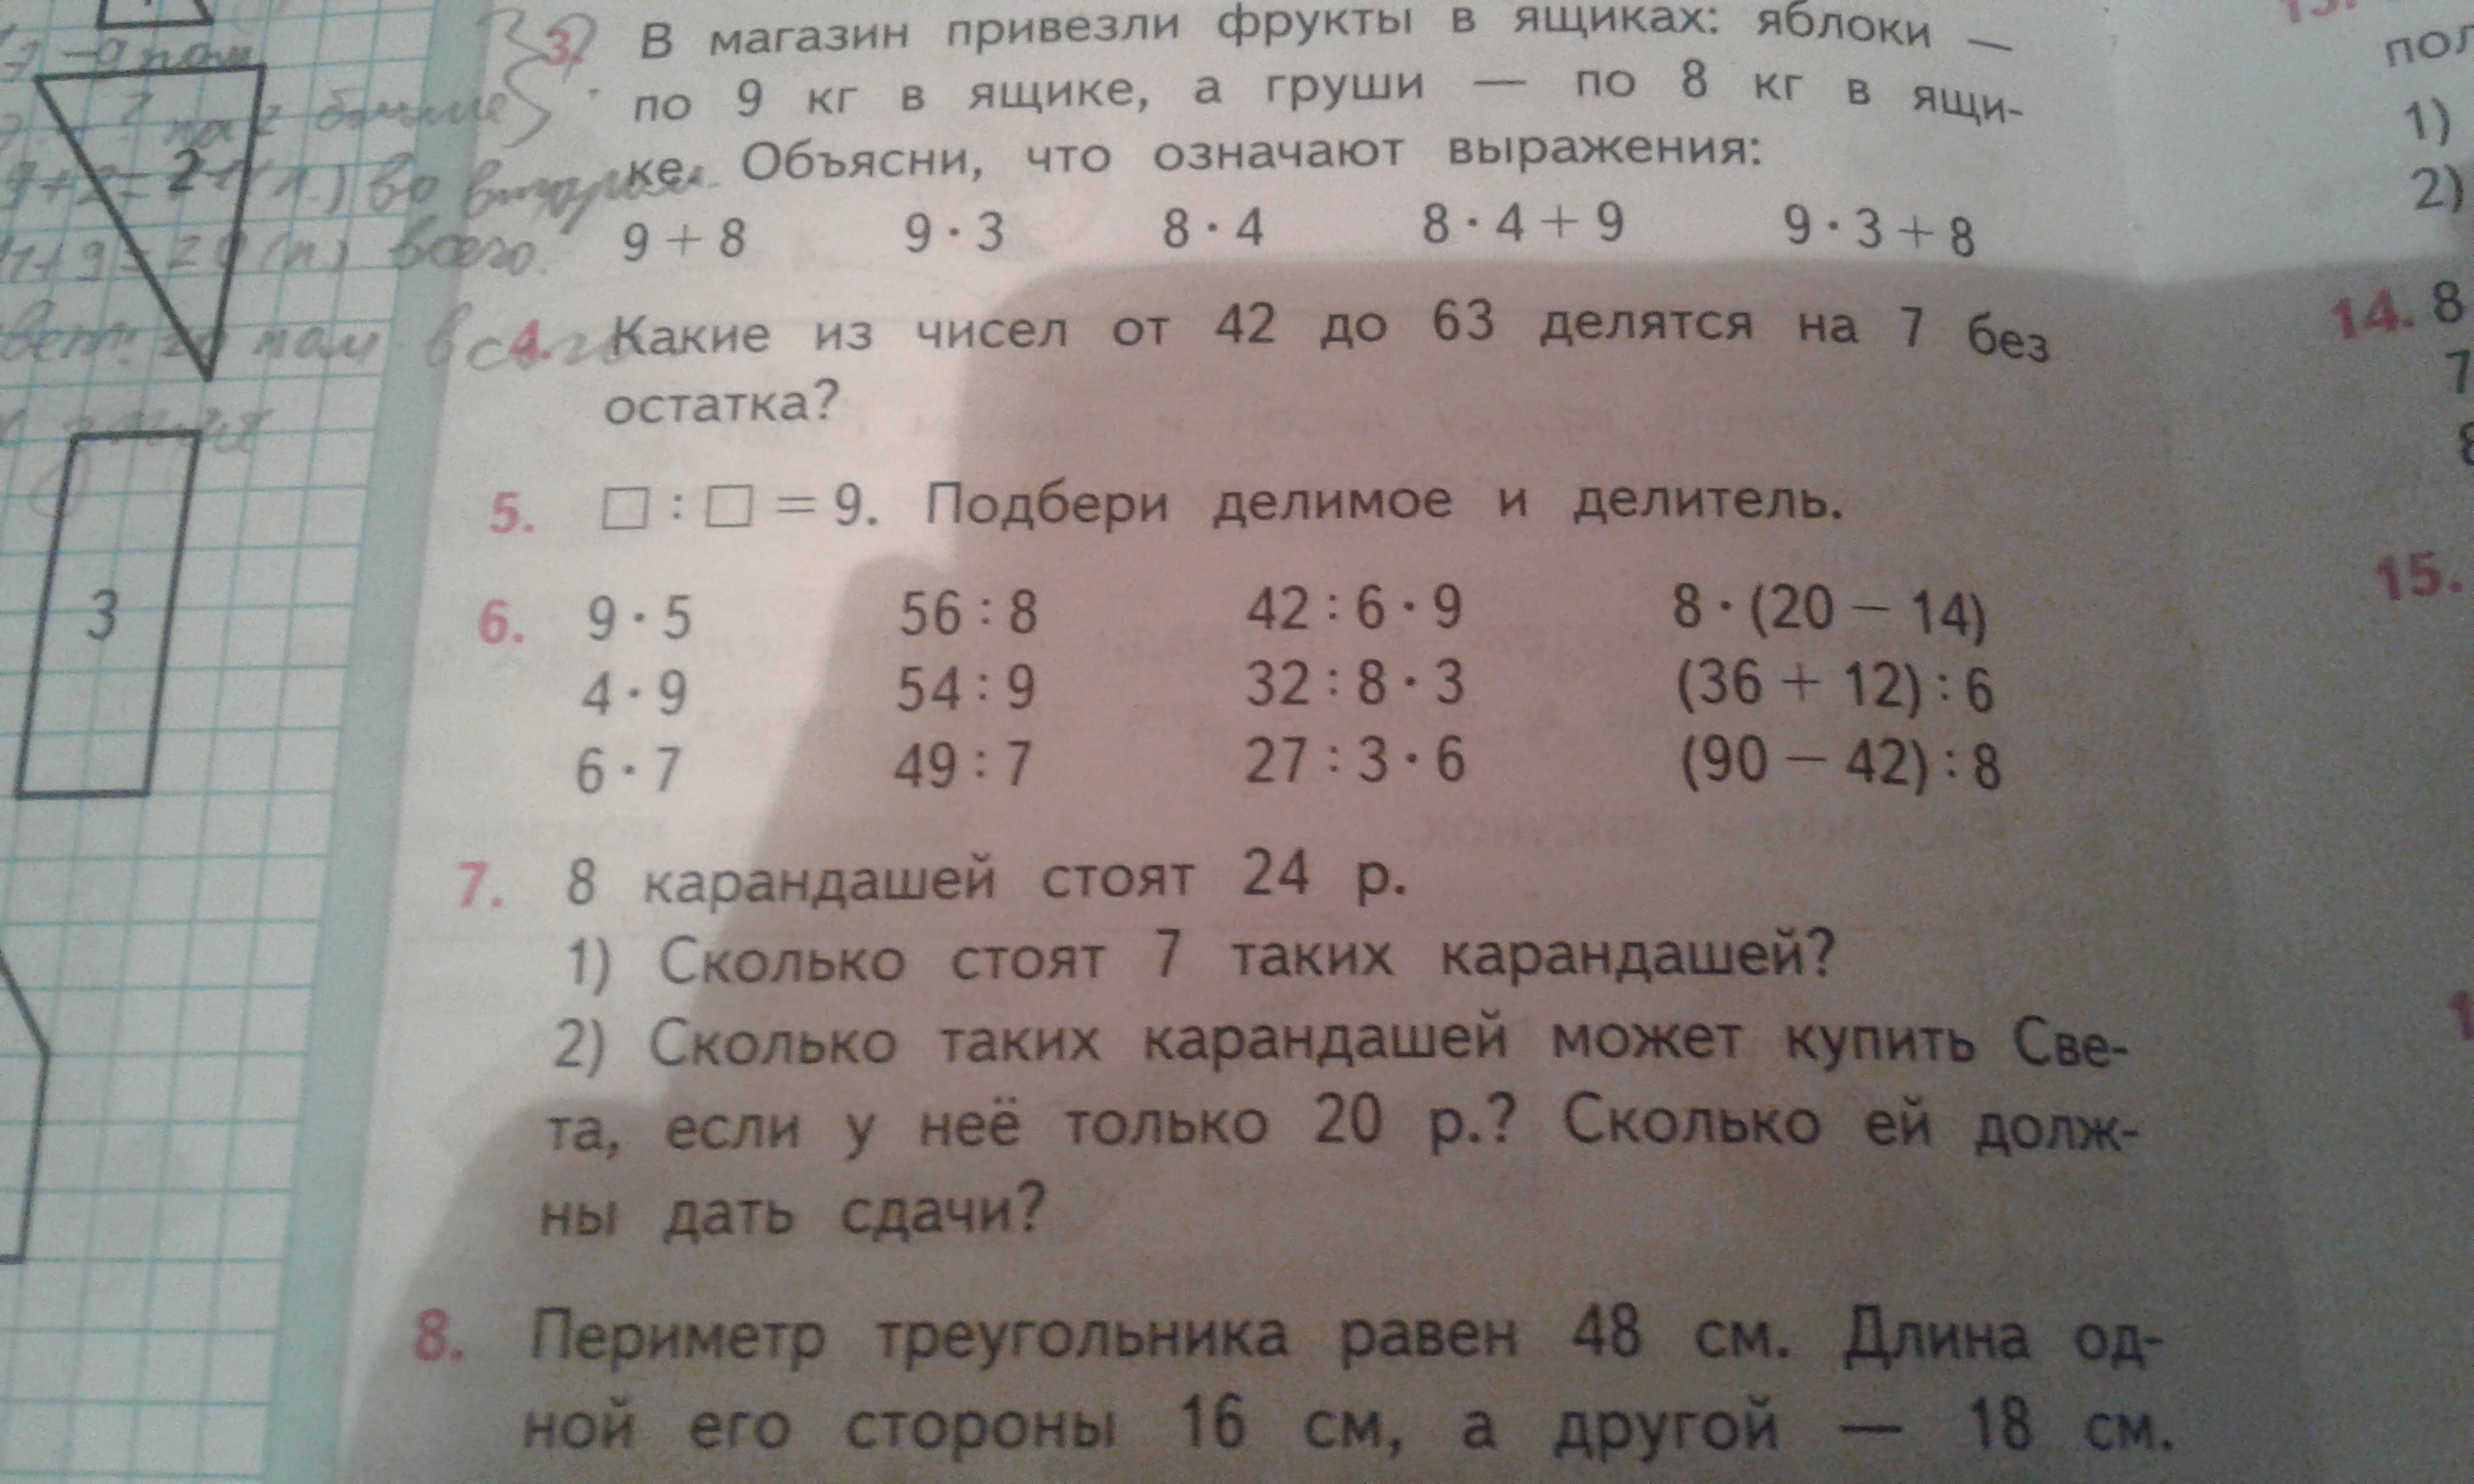 Математика 1 класс страница 76 номер 5. Математика 3 класс 1 часть учебник стр 76 номер 7. Математика 3 класс 1 часть стр 76 номер 2.